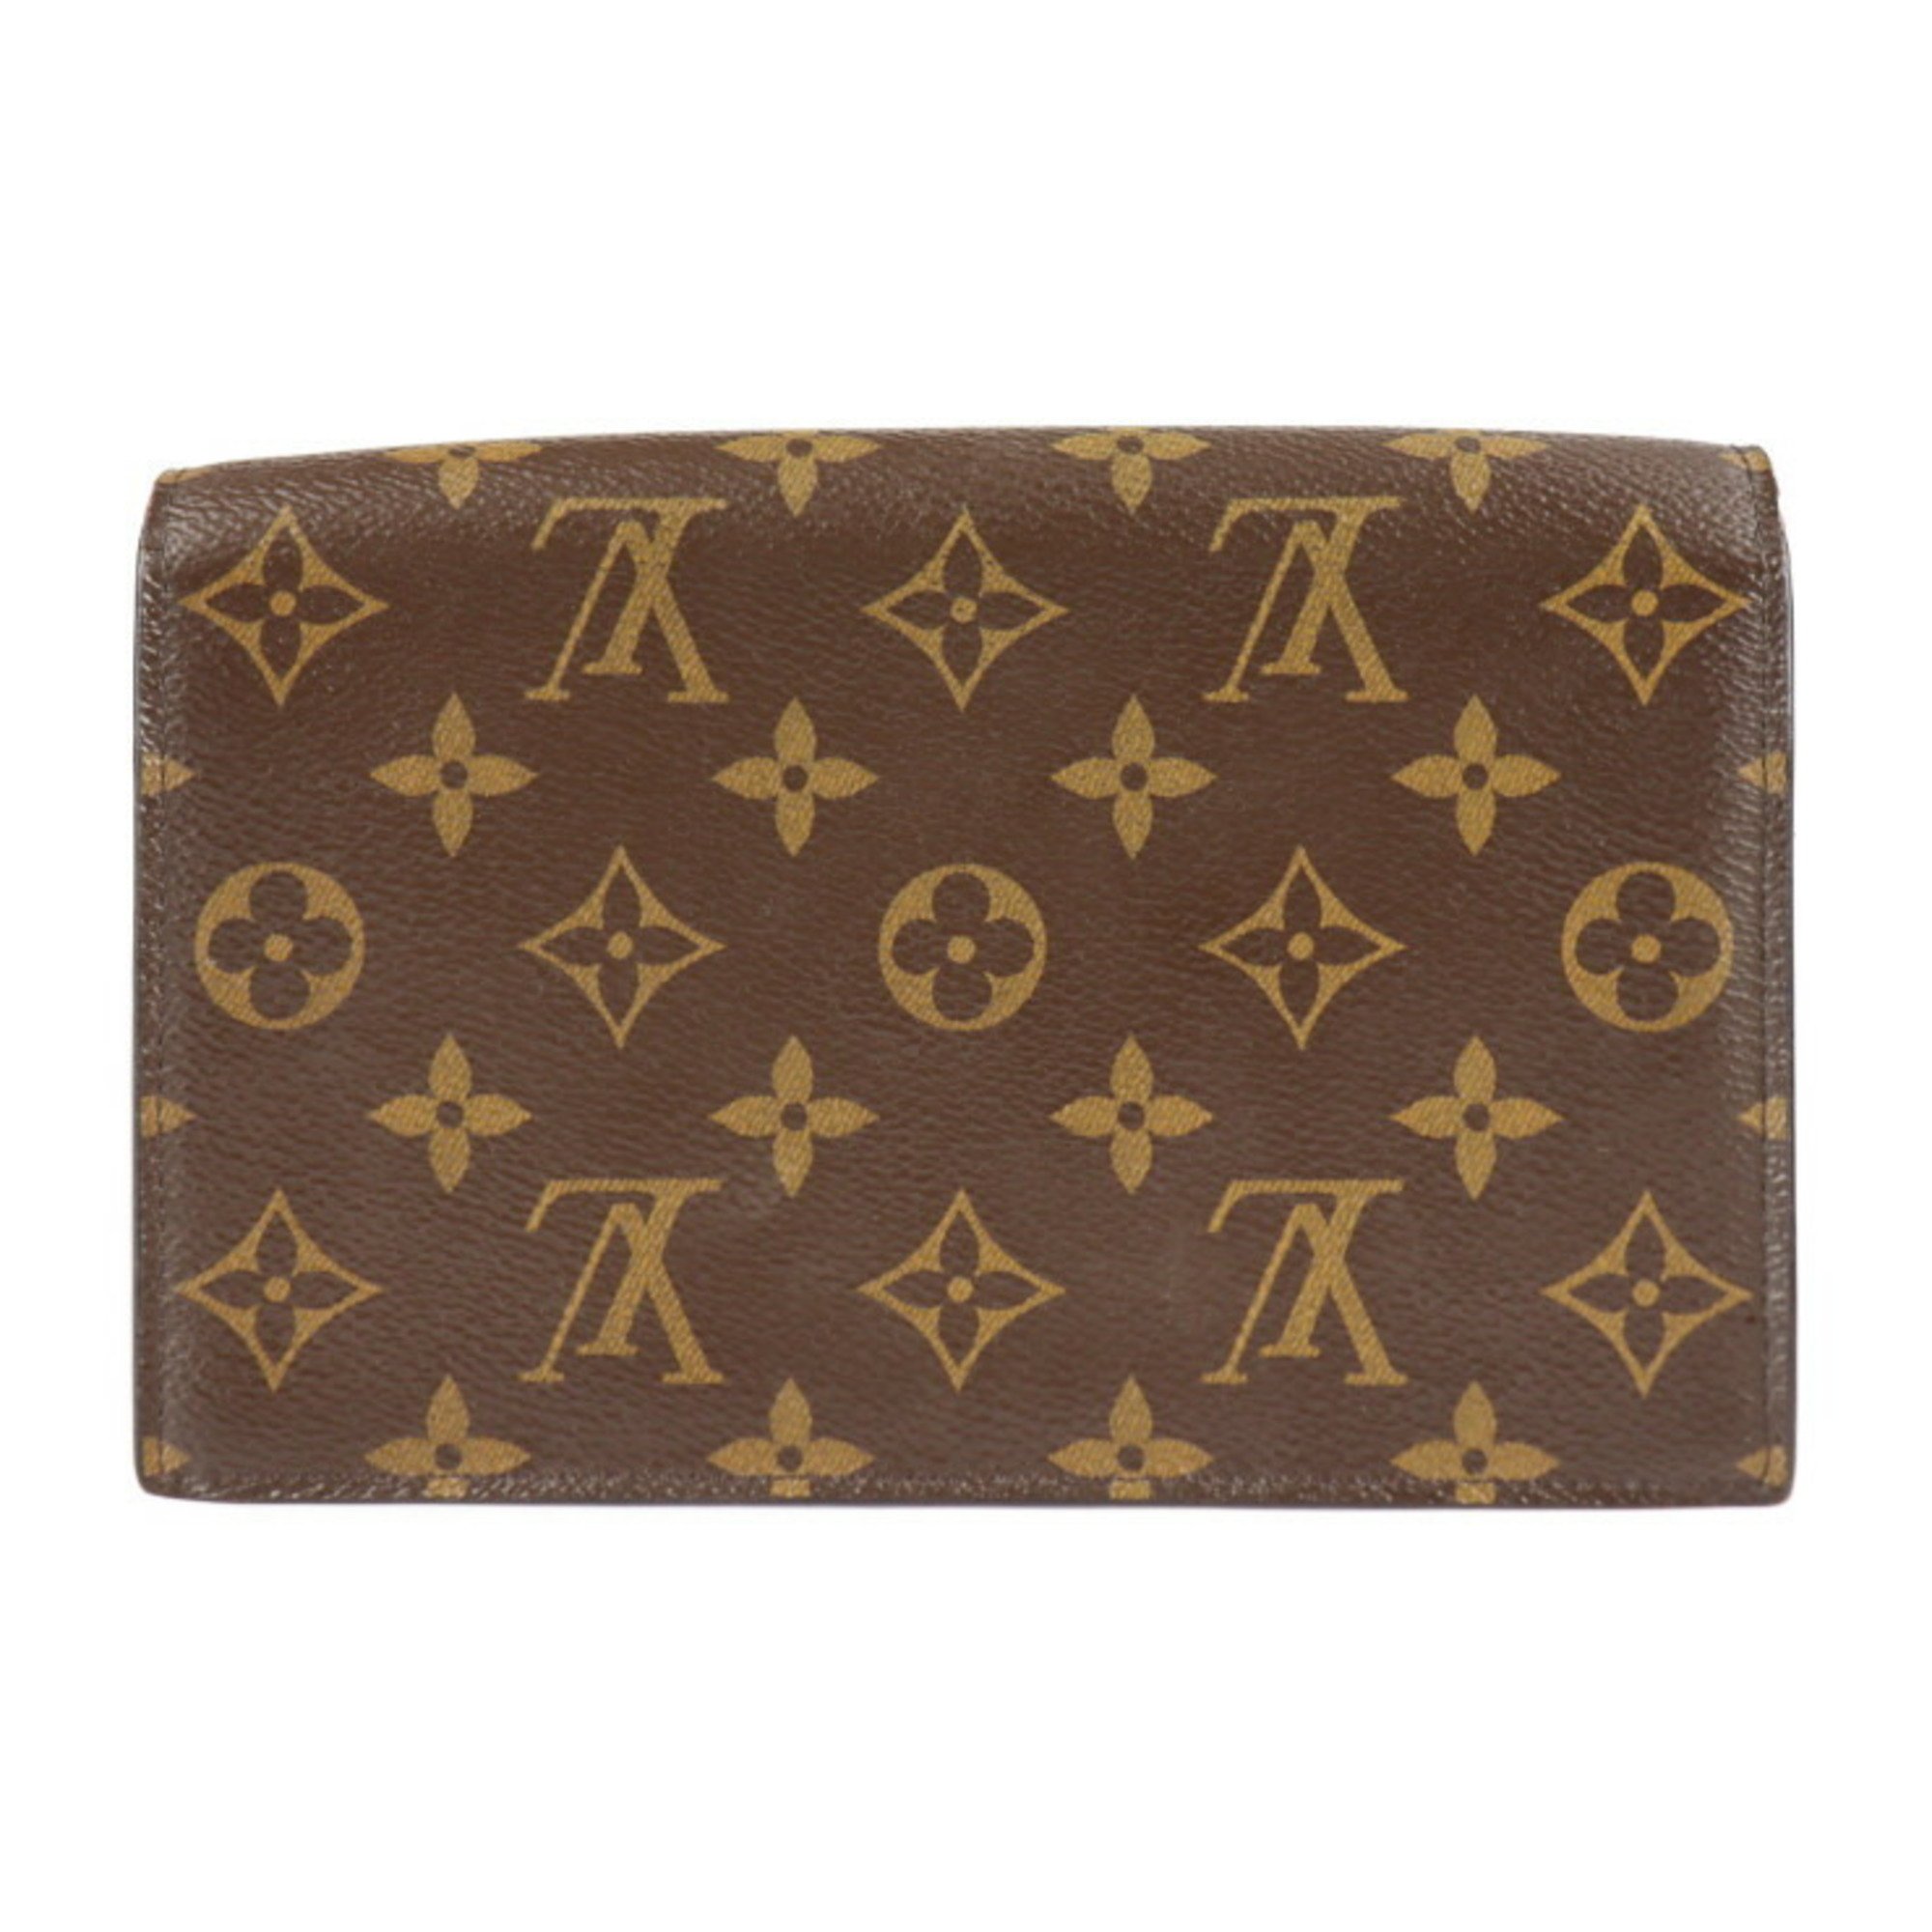 LOUIS VUITTON Louis Vuitton Portefeuille Flor Chain Clutch Bag M69578 Monogram Canvas Leather Brown Fuchsia Wallet 2WAY Shoulder Second Handbag